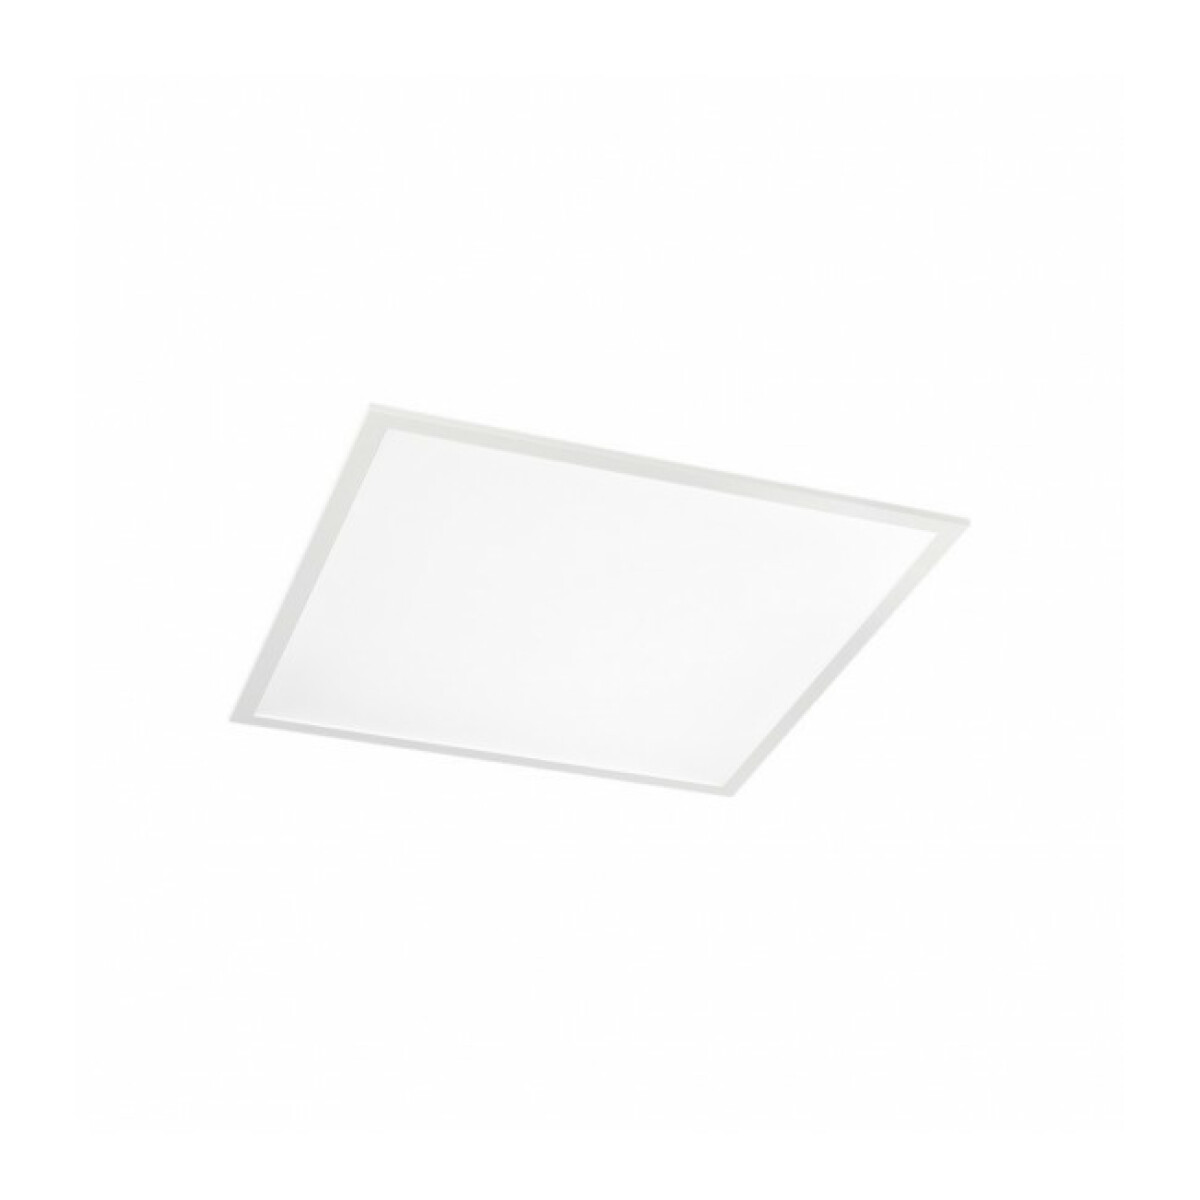 Plafonniers Ideal Lux Panel LED Led Aluminium blanc 1 ampoule 3cm